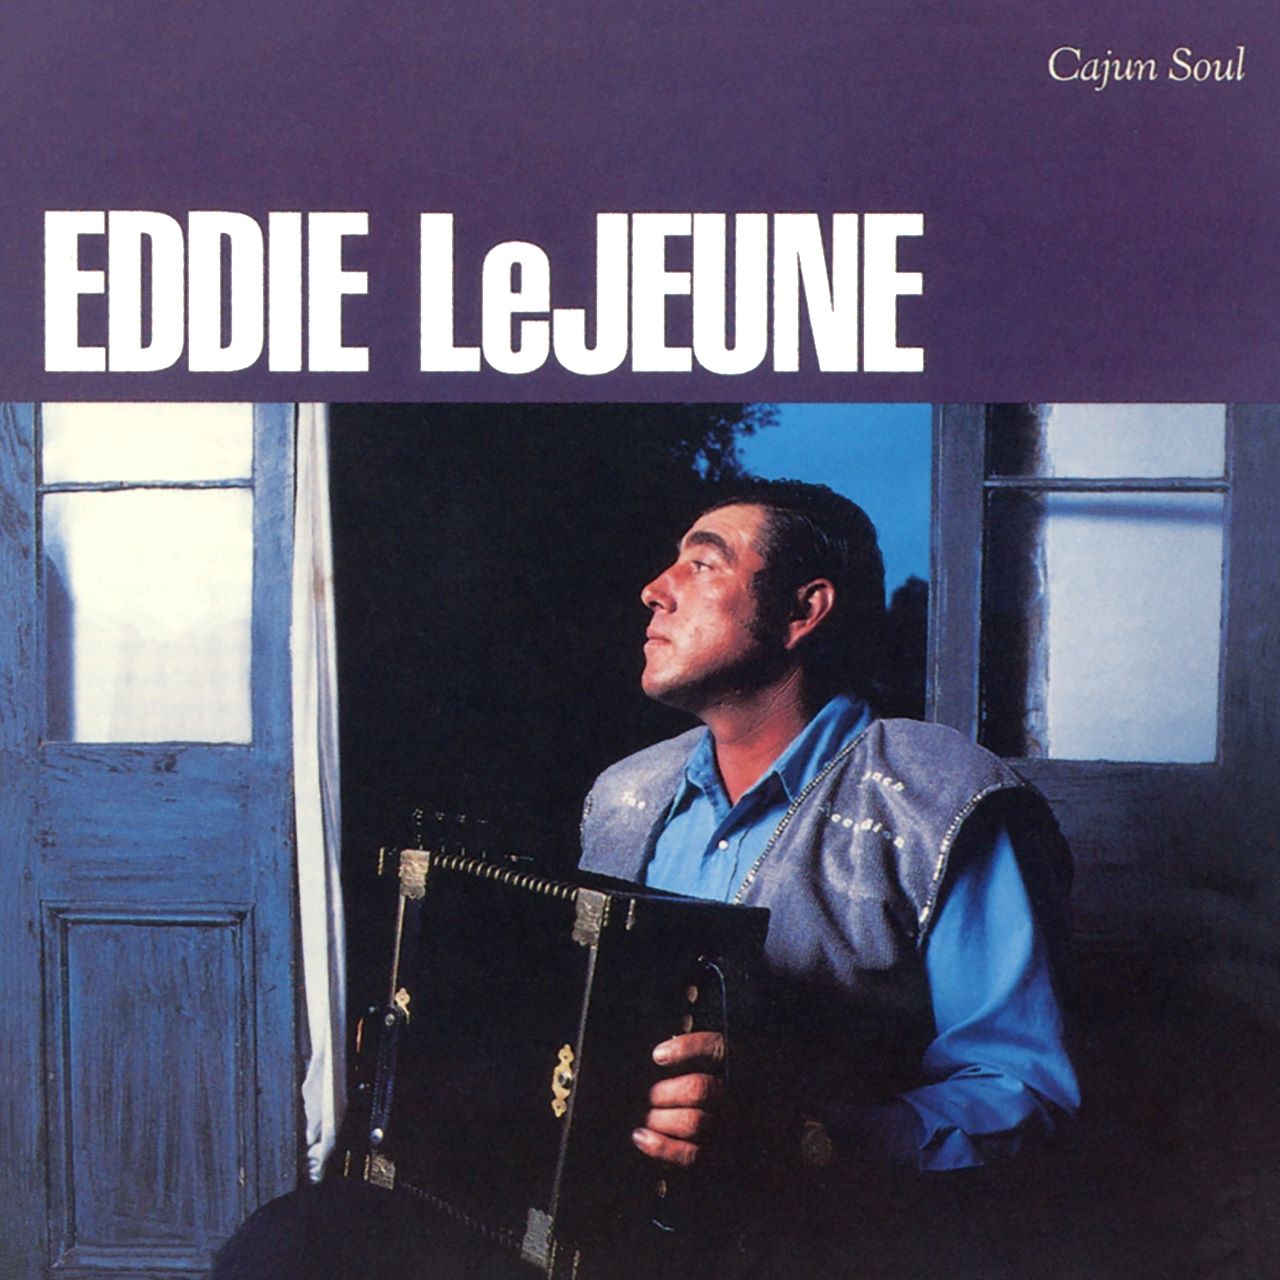 Eddie LeJeune - Cajun Soul cover album